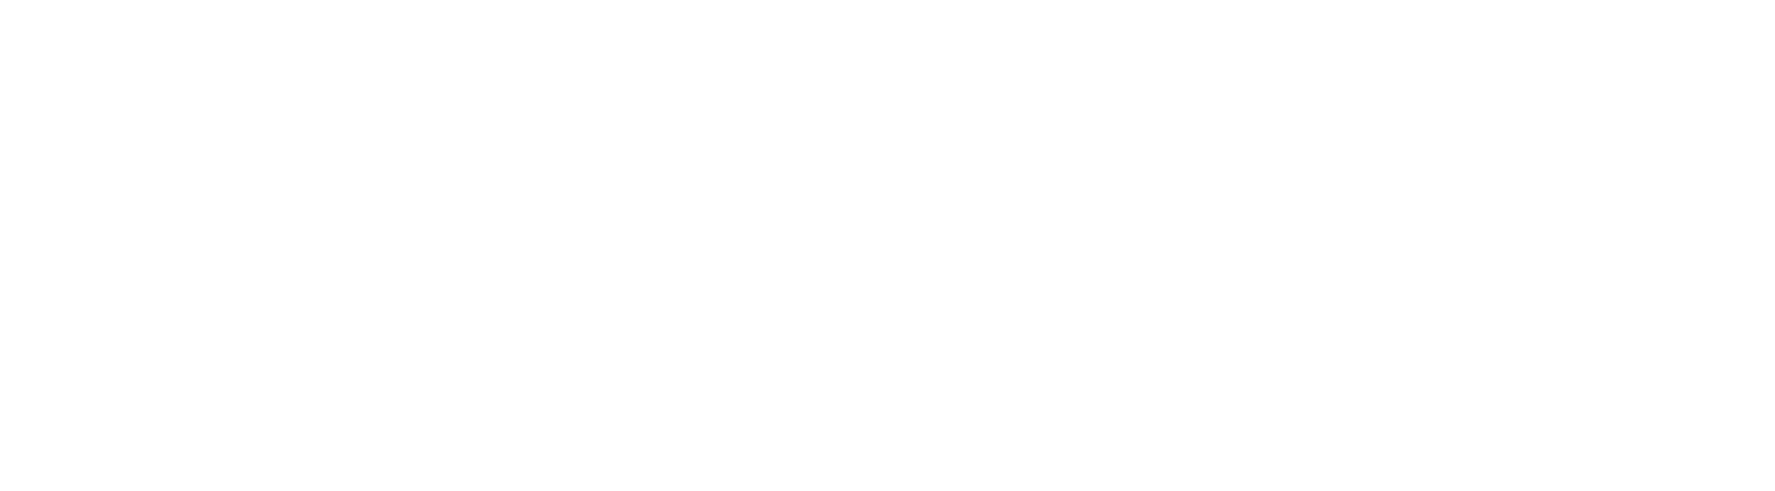 Suomen Signbank